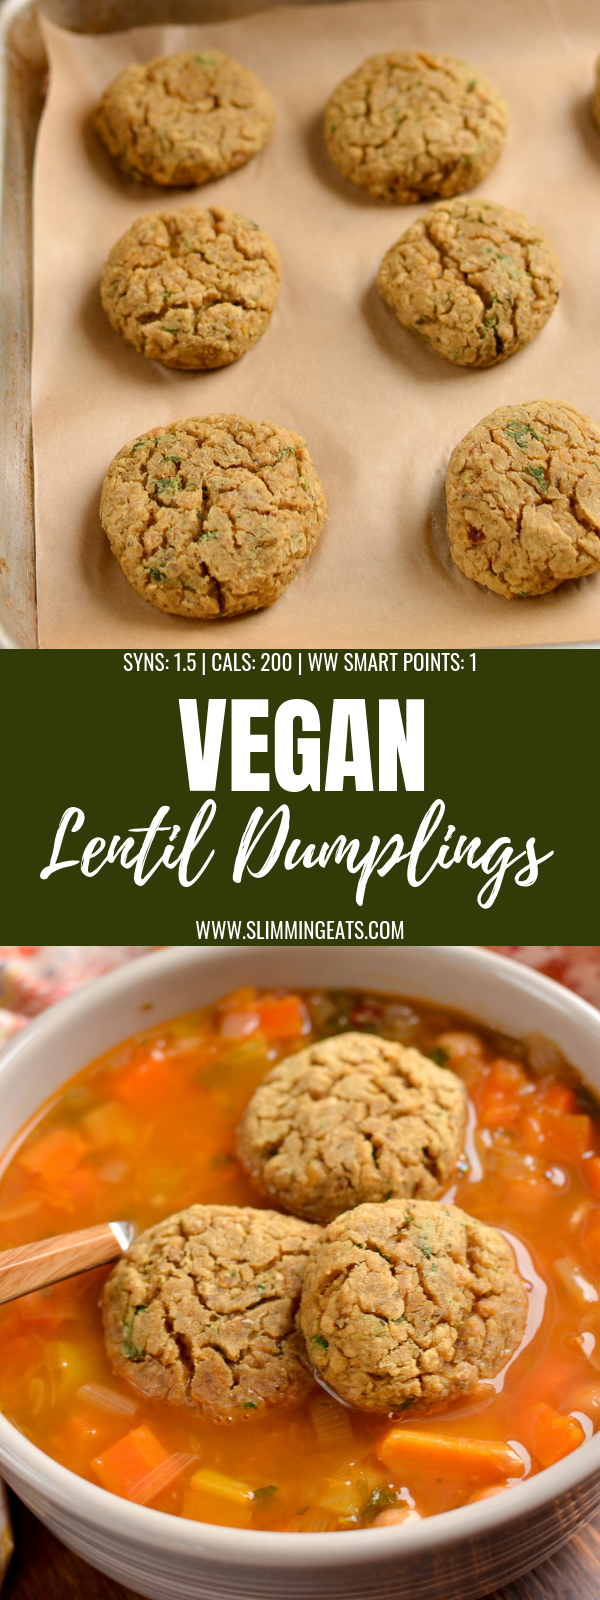 vegan lentil dumplings pin image